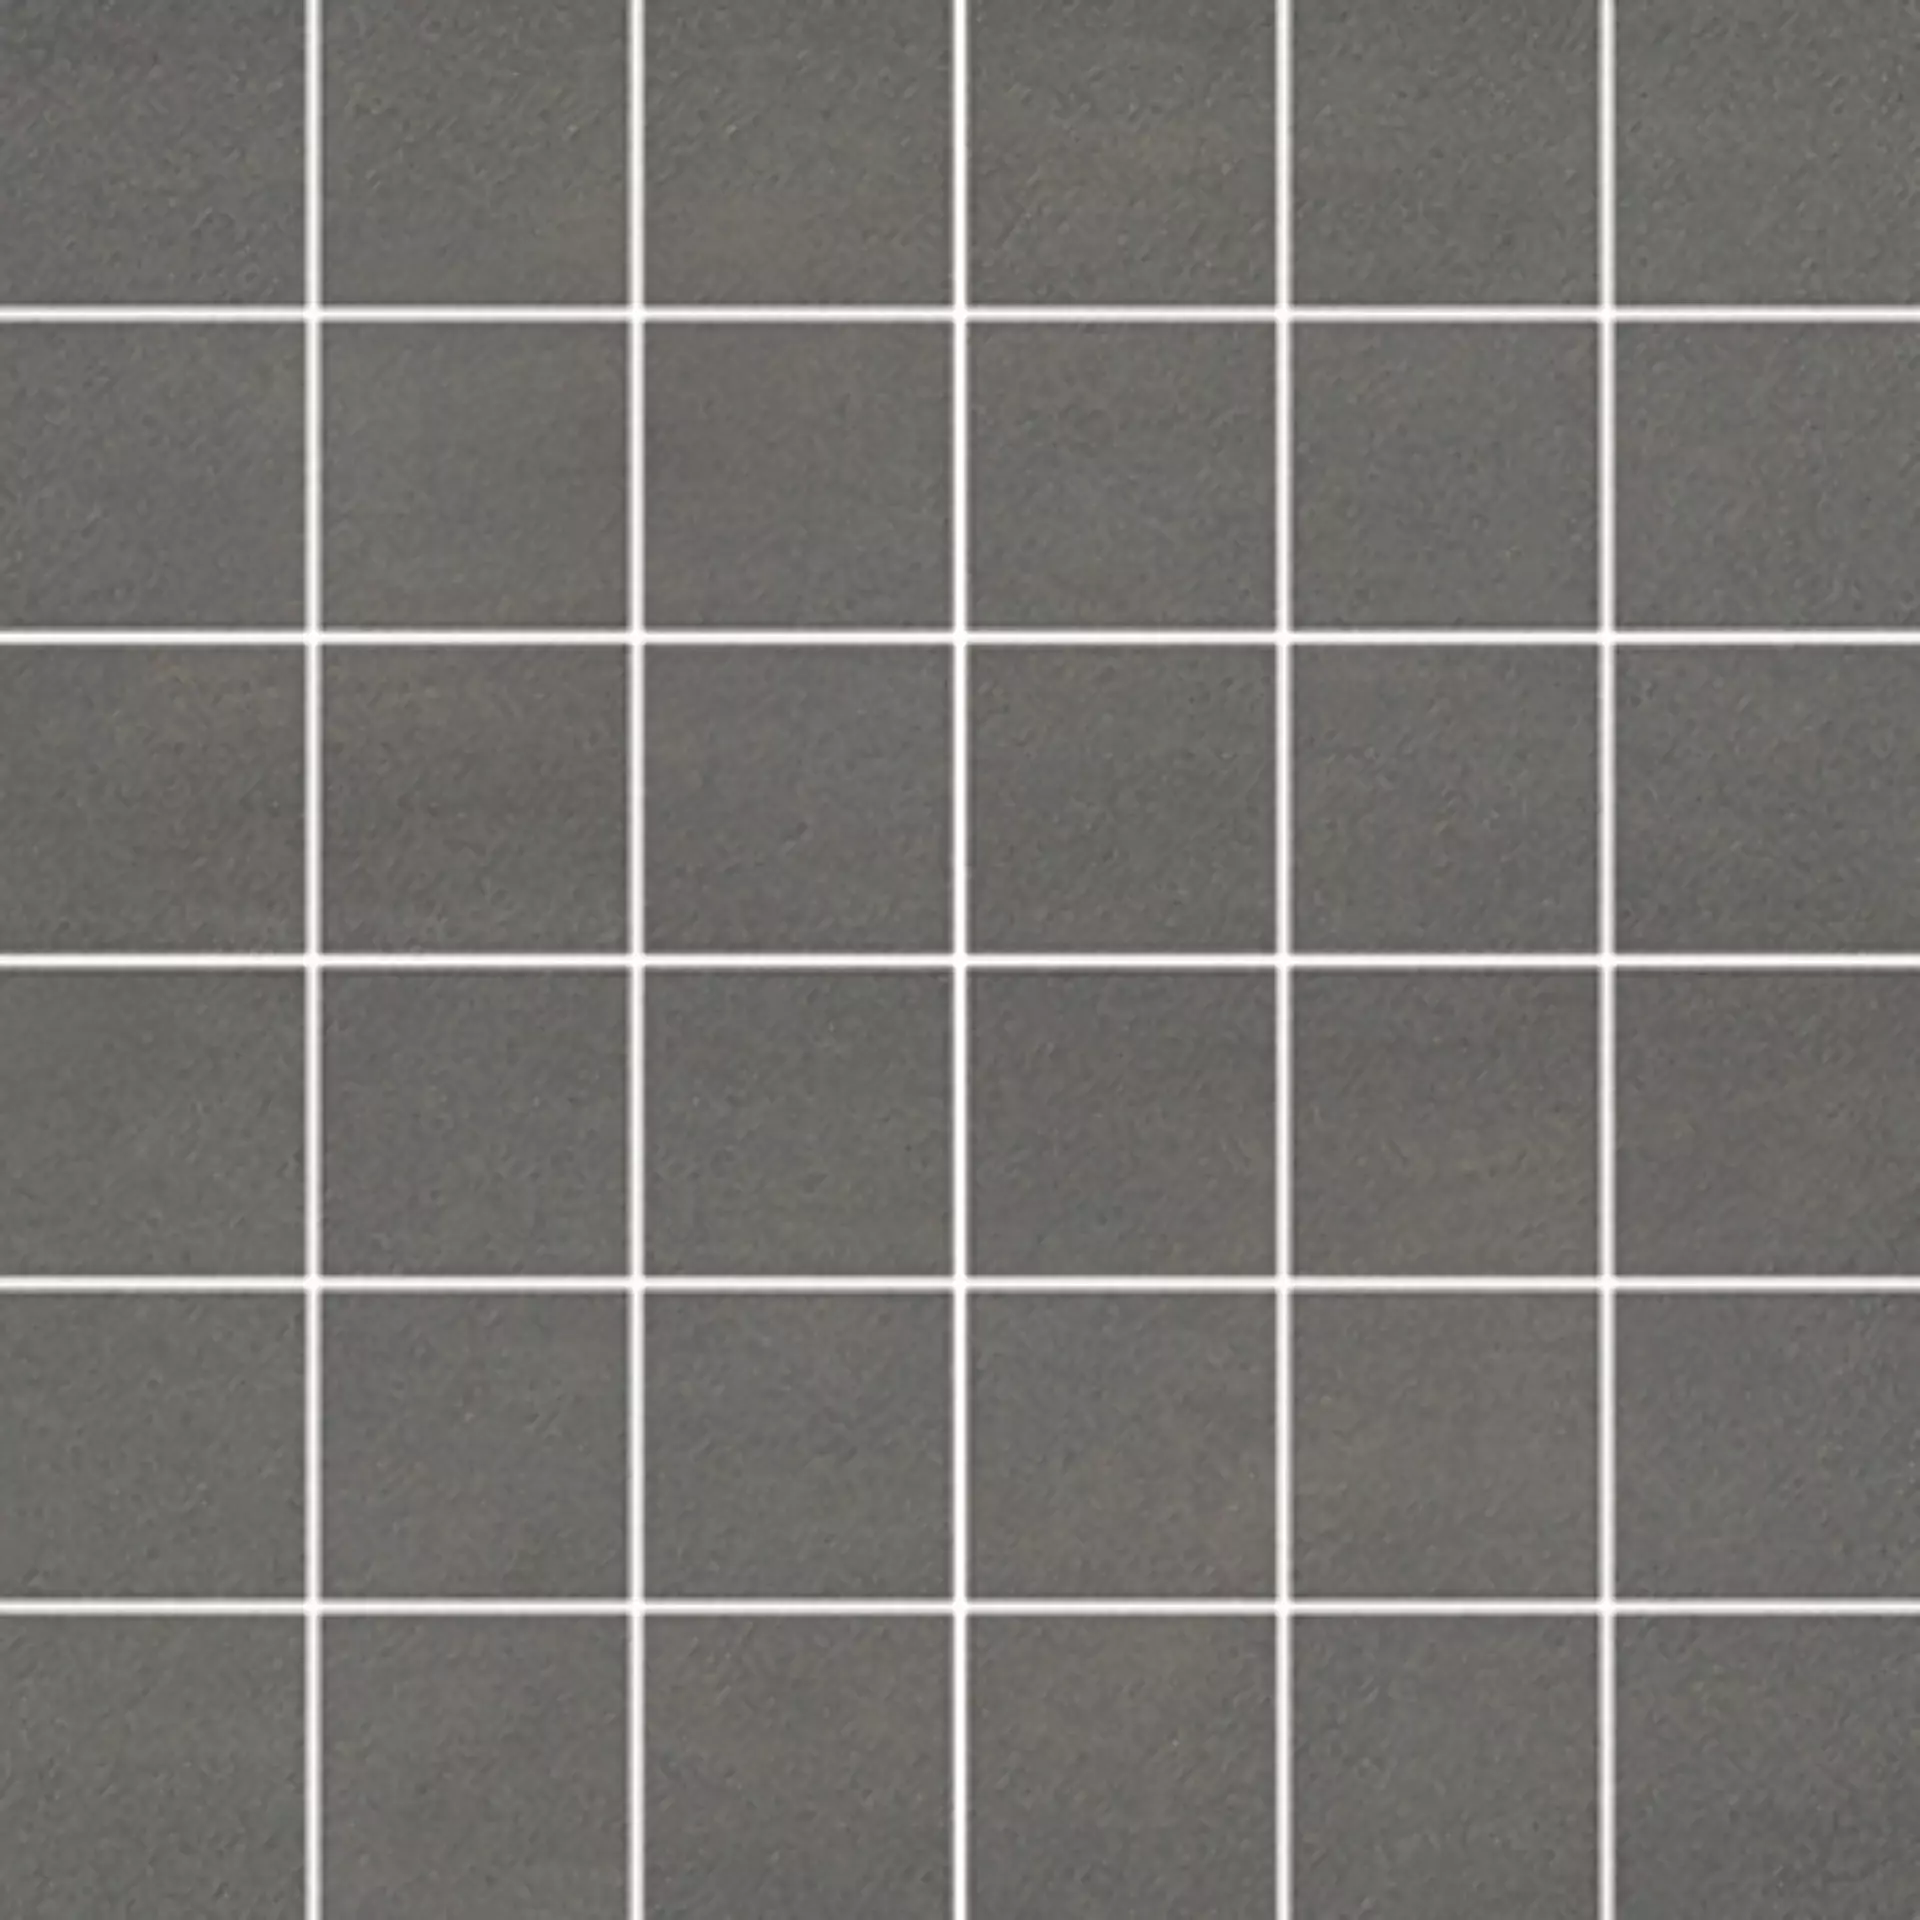 Wandfliese,Bodenfliese Villeroy & Boch Unit Four Dark Grey Matt Dark Grey 2363-CT62 matt 5x5cm Mosaik (5x5) rektifiziert 10mm